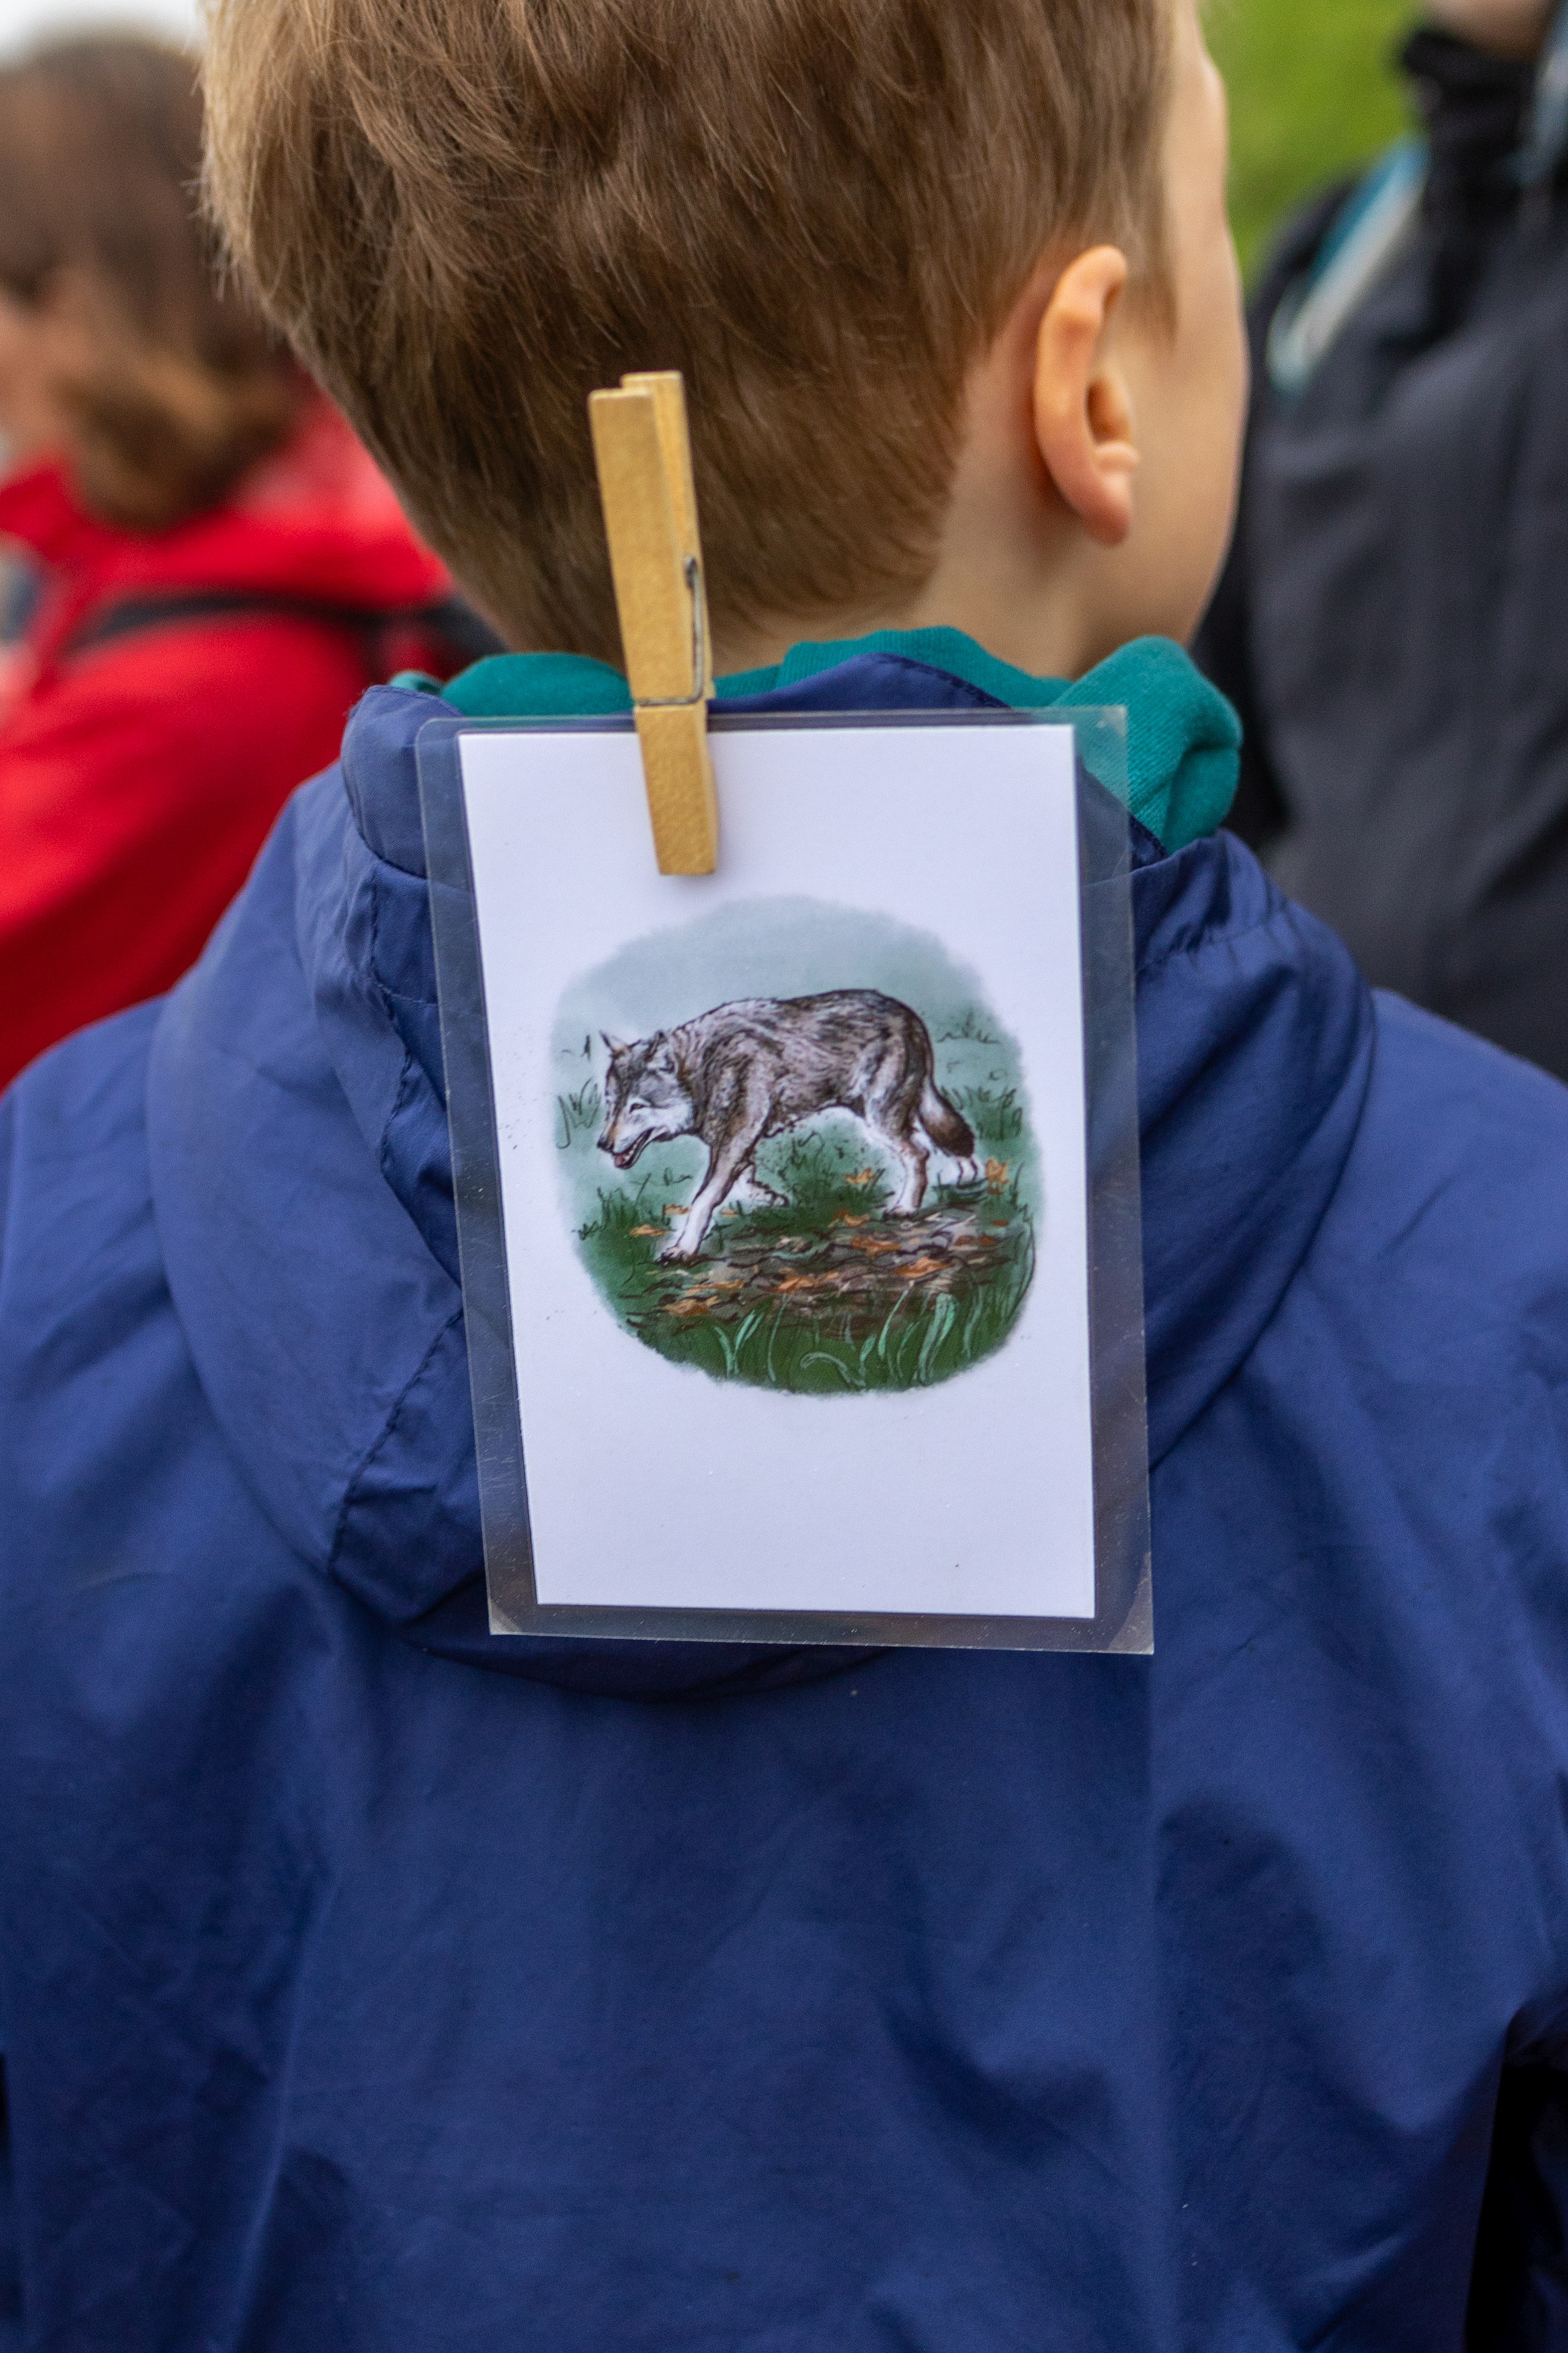 Hinterkopf und Rücken von einem Kind. Das Kind trägt eine Regenjacke. An der Kaputze ist eine Karte mit einer Wöscheklammer angebracht. Auf der Karte ist ein Wold gemalt.